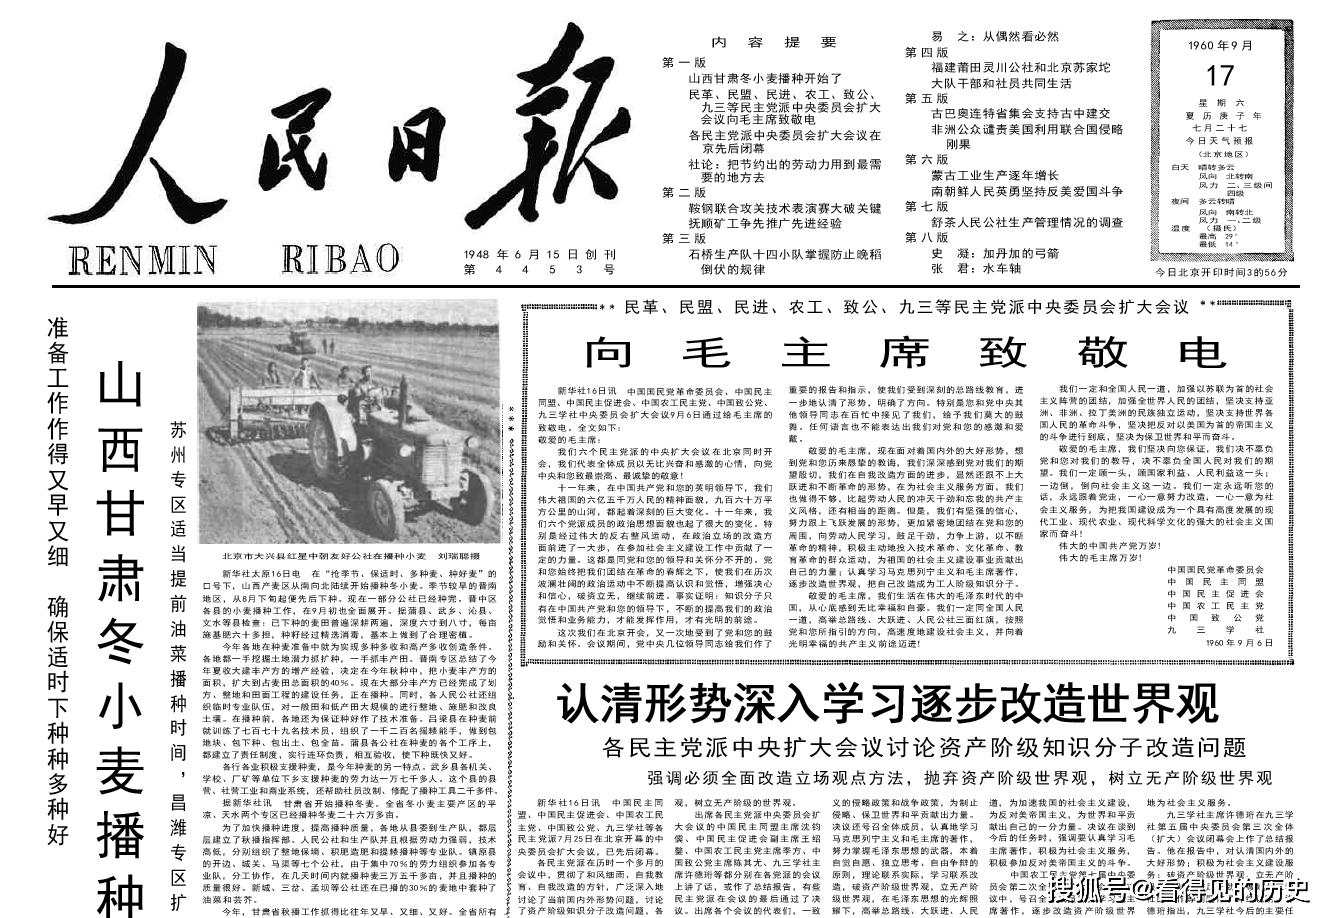 抓住时机力争晚稻高产多收1960年9月17日《人民日报》_手机搜狐网